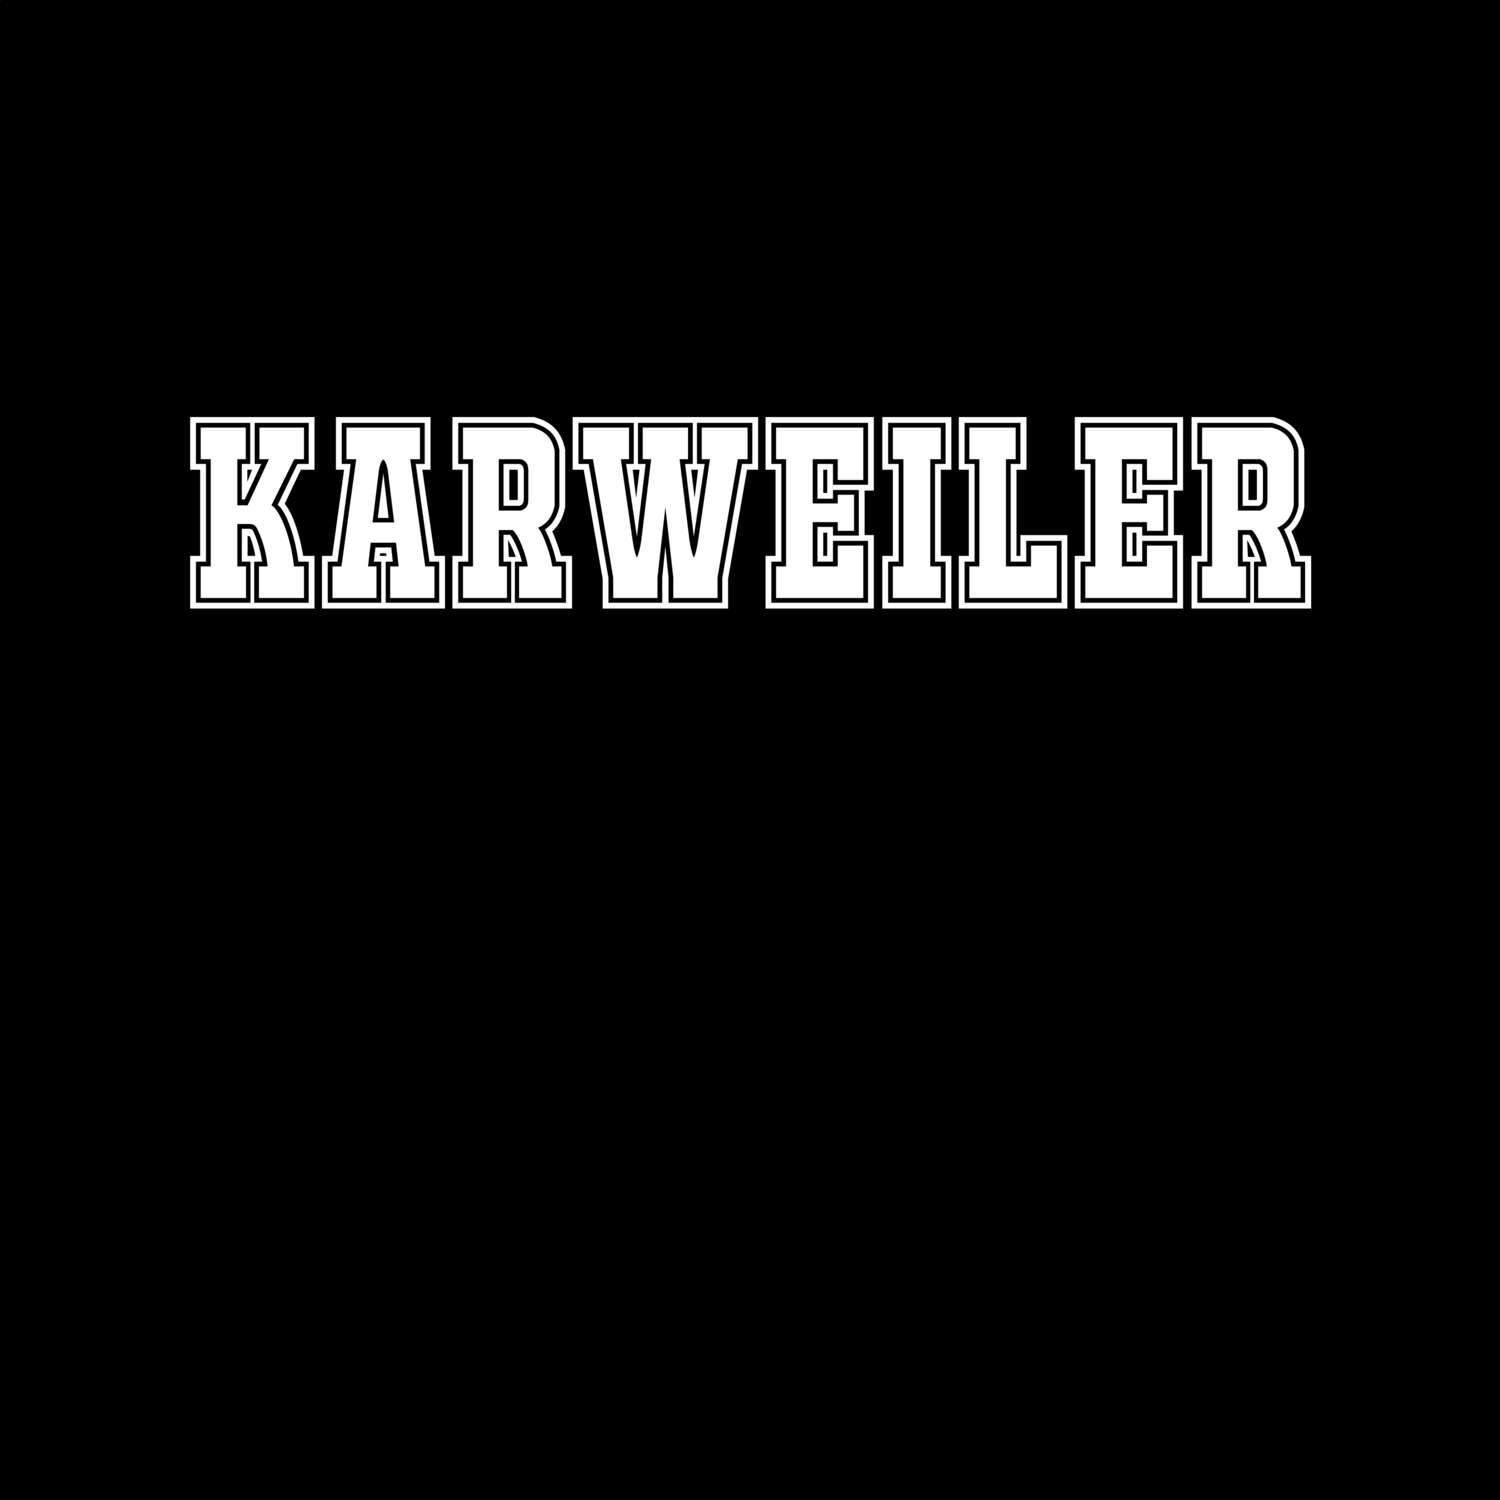 Karweiler T-Shirt »Classic«